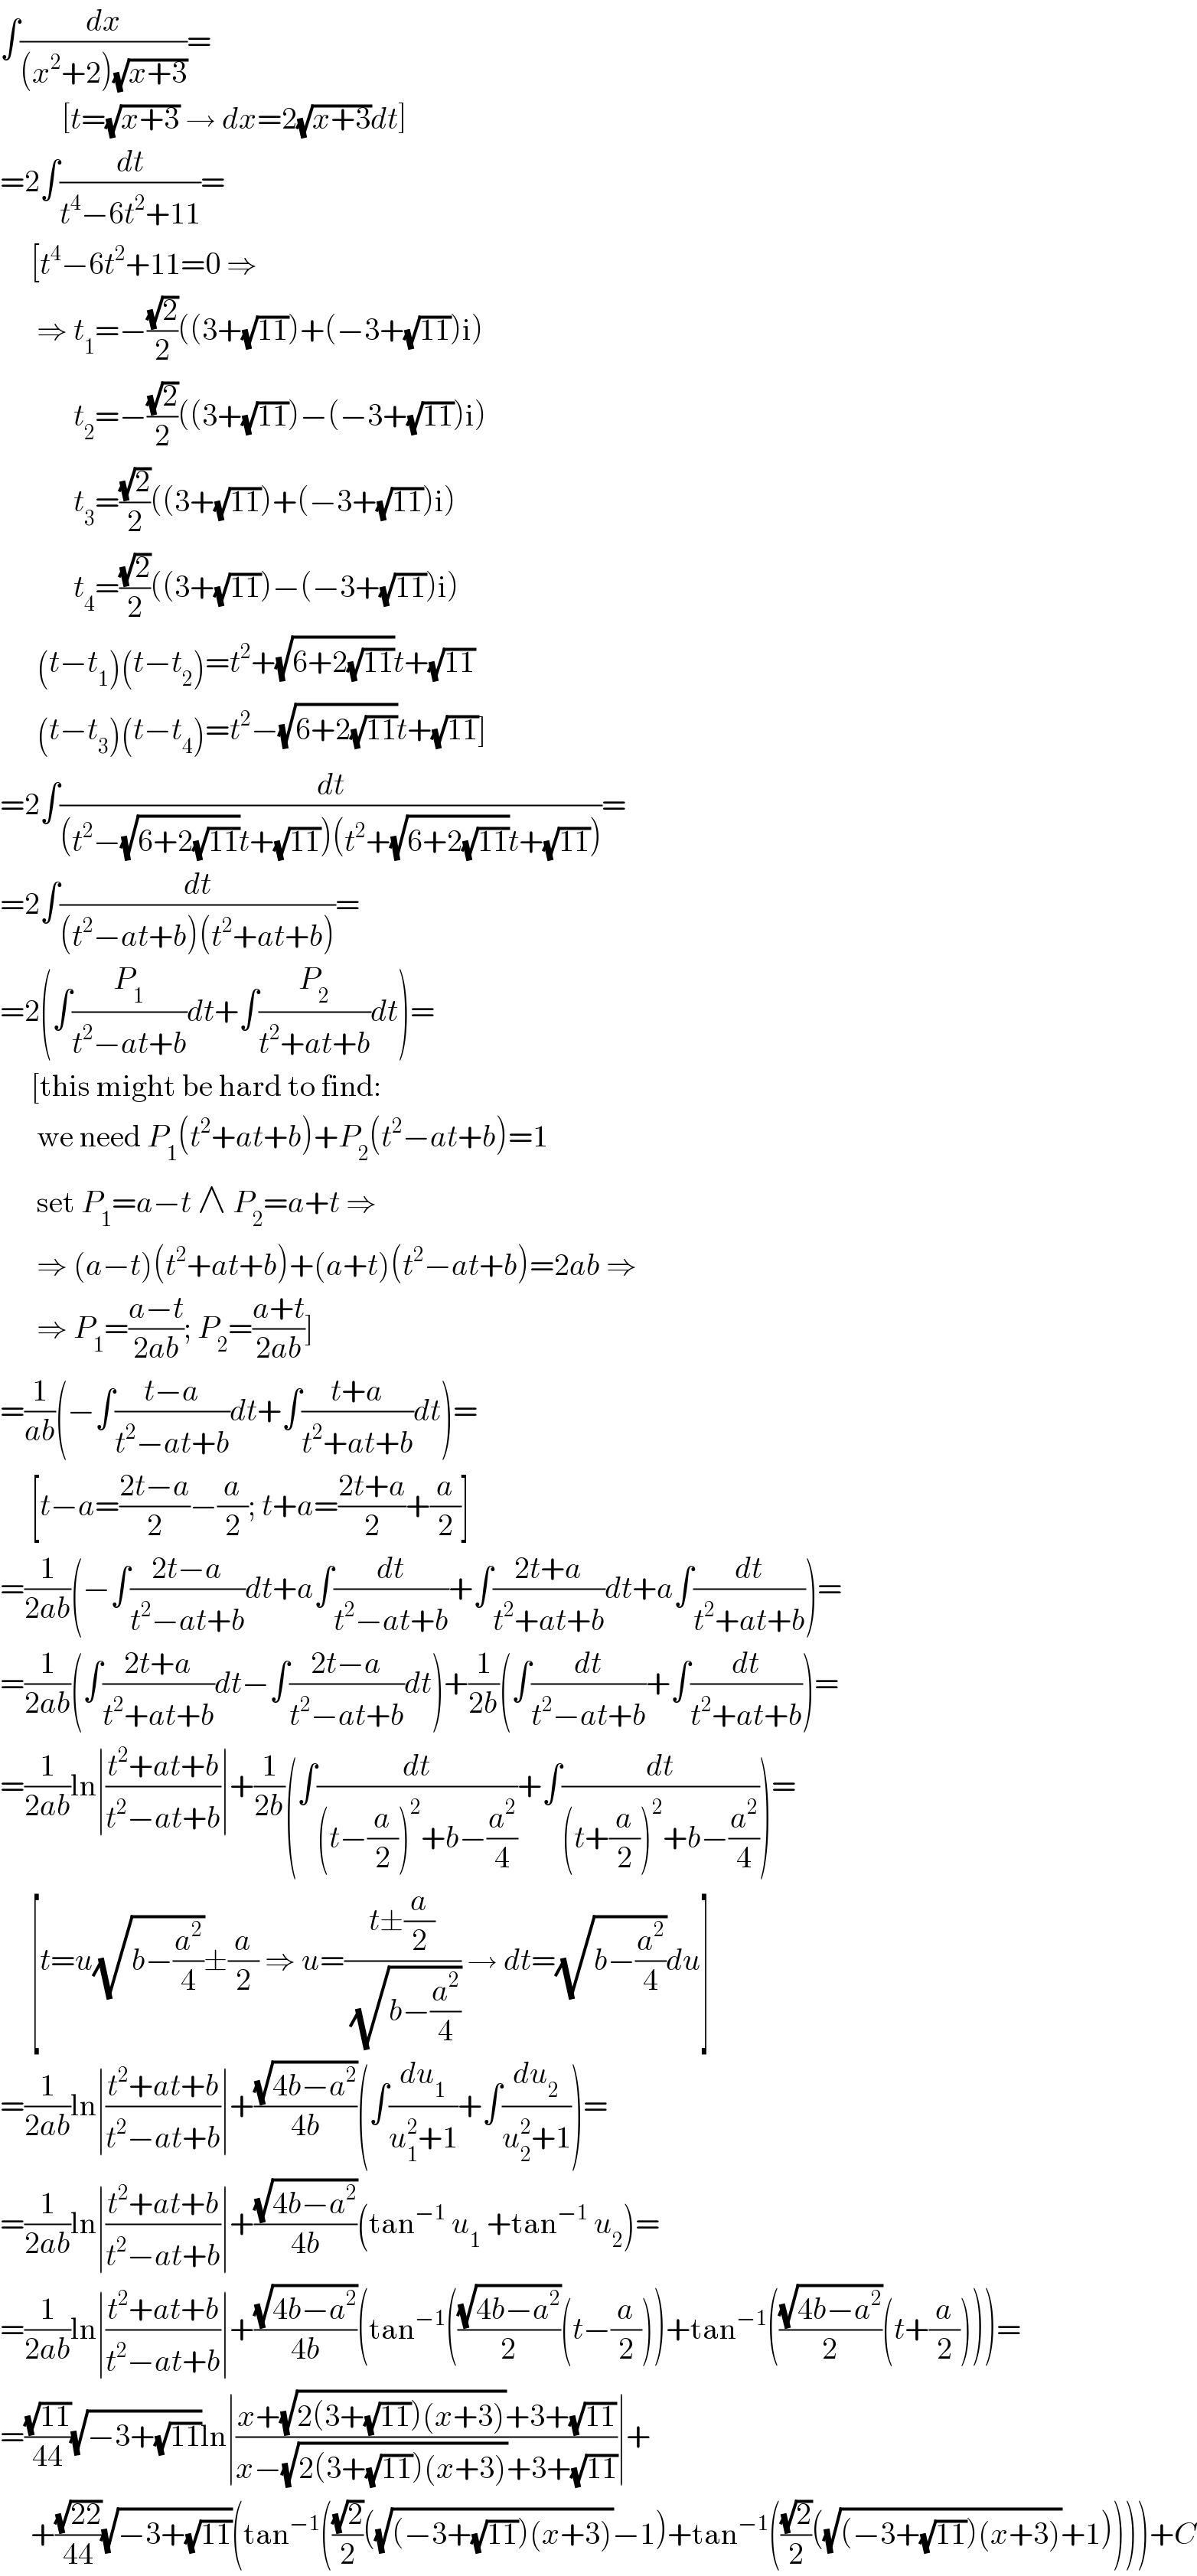 ∫(dx/((x^2 +2)(√(x+3))))=            [t=(√(x+3)) → dx=2(√(x+3))dt]  =2∫(dt/(t^4 −6t^2 +11))=       [t^4 −6t^2 +11=0 ⇒        ⇒ t_1 =−((√2)/2)((3+(√(11)))+(−3+(√(11)))i)              t_2 =−((√2)/2)((3+(√(11)))−(−3+(√(11)))i)              t_3 =((√2)/2)((3+(√(11)))+(−3+(√(11)))i)              t_4 =((√2)/2)((3+(√(11)))−(−3+(√(11)))i)        (t−t_1 )(t−t_2 )=t^2 +(√(6+2(√(11))))t+(√(11))        (t−t_3 )(t−t_4 )=t^2 −(√(6+2(√(11))))t+(√(11))]  =2∫(dt/((t^2 −(√(6+2(√(11))))t+(√(11)))(t^2 +(√(6+2(√(11))))t+(√(11)))))=  =2∫(dt/((t^2 −at+b)(t^2 +at+b)))=  =2(∫(P_1 /(t^2 −at+b))dt+∫(P_2 /(t^2 +at+b))dt)=       [this might be hard to find:        we need P_1 (t^2 +at+b)+P_2 (t^2 −at+b)=1        set P_1 =a−t ∧ P_2 =a+t ⇒        ⇒ (a−t)(t^2 +at+b)+(a+t)(t^2 −at+b)=2ab ⇒        ⇒ P_1 =((a−t)/(2ab)); P_2 =((a+t)/(2ab))]  =(1/(ab))(−∫((t−a)/(t^2 −at+b))dt+∫((t+a)/(t^2 +at+b))dt)=       [t−a=((2t−a)/2)−(a/2); t+a=((2t+a)/2)+(a/2)]  =(1/(2ab))(−∫((2t−a)/(t^2 −at+b))dt+a∫(dt/(t^2 −at+b))+∫((2t+a)/(t^2 +at+b))dt+a∫(dt/(t^2 +at+b)))=  =(1/(2ab))(∫((2t+a)/(t^2 +at+b))dt−∫((2t−a)/(t^2 −at+b))dt)+(1/(2b))(∫(dt/(t^2 −at+b))+∫(dt/(t^2 +at+b)))=  =(1/(2ab))ln∣((t^2 +at+b)/(t^2 −at+b))∣+(1/(2b))(∫(dt/((t−(a/2))^2 +b−(a^2 /4)))+∫(dt/((t+(a/2))^2 +b−(a^2 /4))))=       [t=u(√(b−(a^2 /4)))±(a/2) ⇒ u=((t±(a/2))/(√(b−(a^2 /4)))) → dt=(√(b−(a^2 /4)))du]  =(1/(2ab))ln∣((t^2 +at+b)/(t^2 −at+b))∣+((√(4b−a^2 ))/(4b))(∫(du_1 /(u_1 ^2 +1))+∫(du_2 /(u_2 ^2 +1)))=  =(1/(2ab))ln∣((t^2 +at+b)/(t^2 −at+b))∣+((√(4b−a^2 ))/(4b))(tan^(−1)  u_1  +tan^(−1)  u_2 )=  =(1/(2ab))ln∣((t^2 +at+b)/(t^2 −at+b))∣+((√(4b−a^2 ))/(4b))(tan^(−1) (((√(4b−a^2 ))/2)(t−(a/2)))+tan^(−1) (((√(4b−a^2 ))/2)(t+(a/2))))=  =((√(11))/(44))(√(−3+(√(11))))ln∣((x+(√(2(3+(√(11)))(x+3)))+3+(√(11)))/(x−(√(2(3+(√(11)))(x+3)))+3+(√(11))))∣+       +((√(22))/(44))(√(−3+(√(11))))(tan^(−1) (((√2)/2)((√((−3+(√(11)))(x+3)))−1)+tan^(−1) (((√2)/2)((√((−3+(√(11)))(x+3)))+1))))+C  